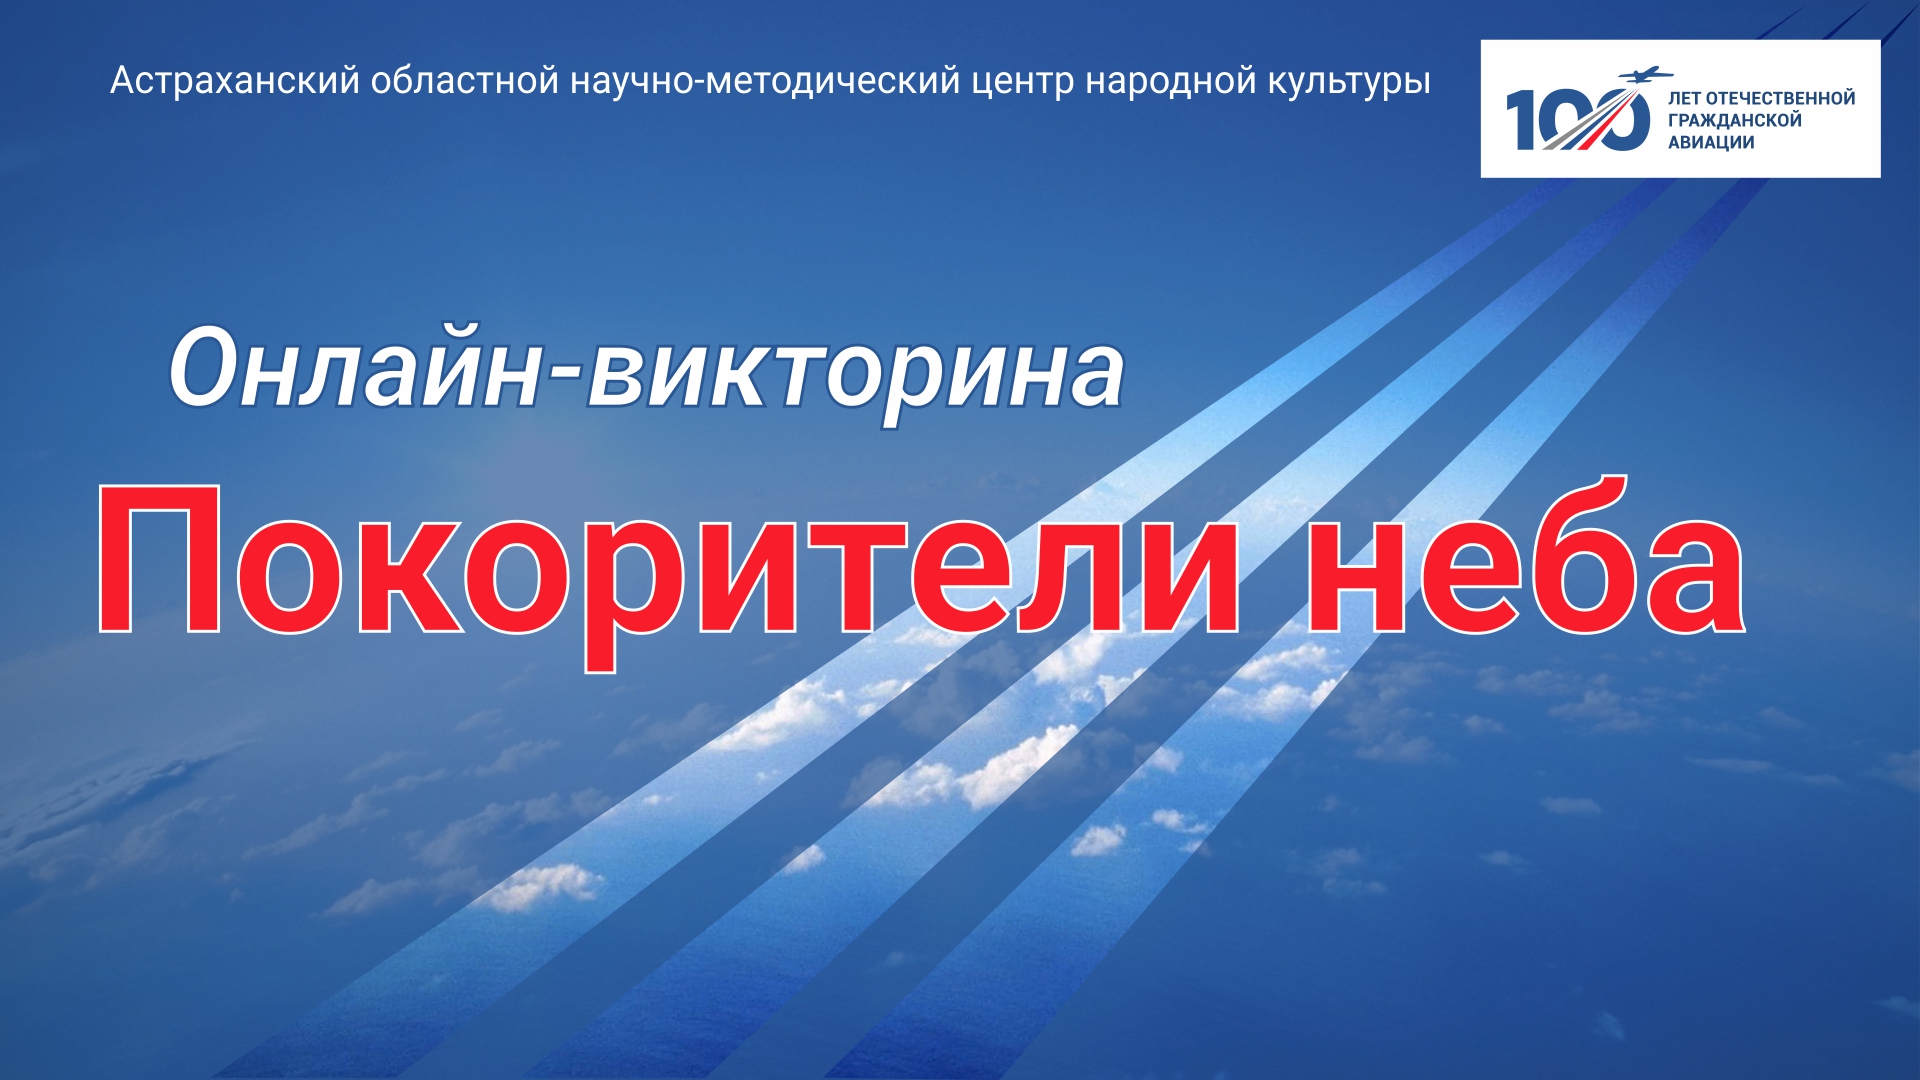 Онлайн-викторина к 100-летию гражданской авиации России